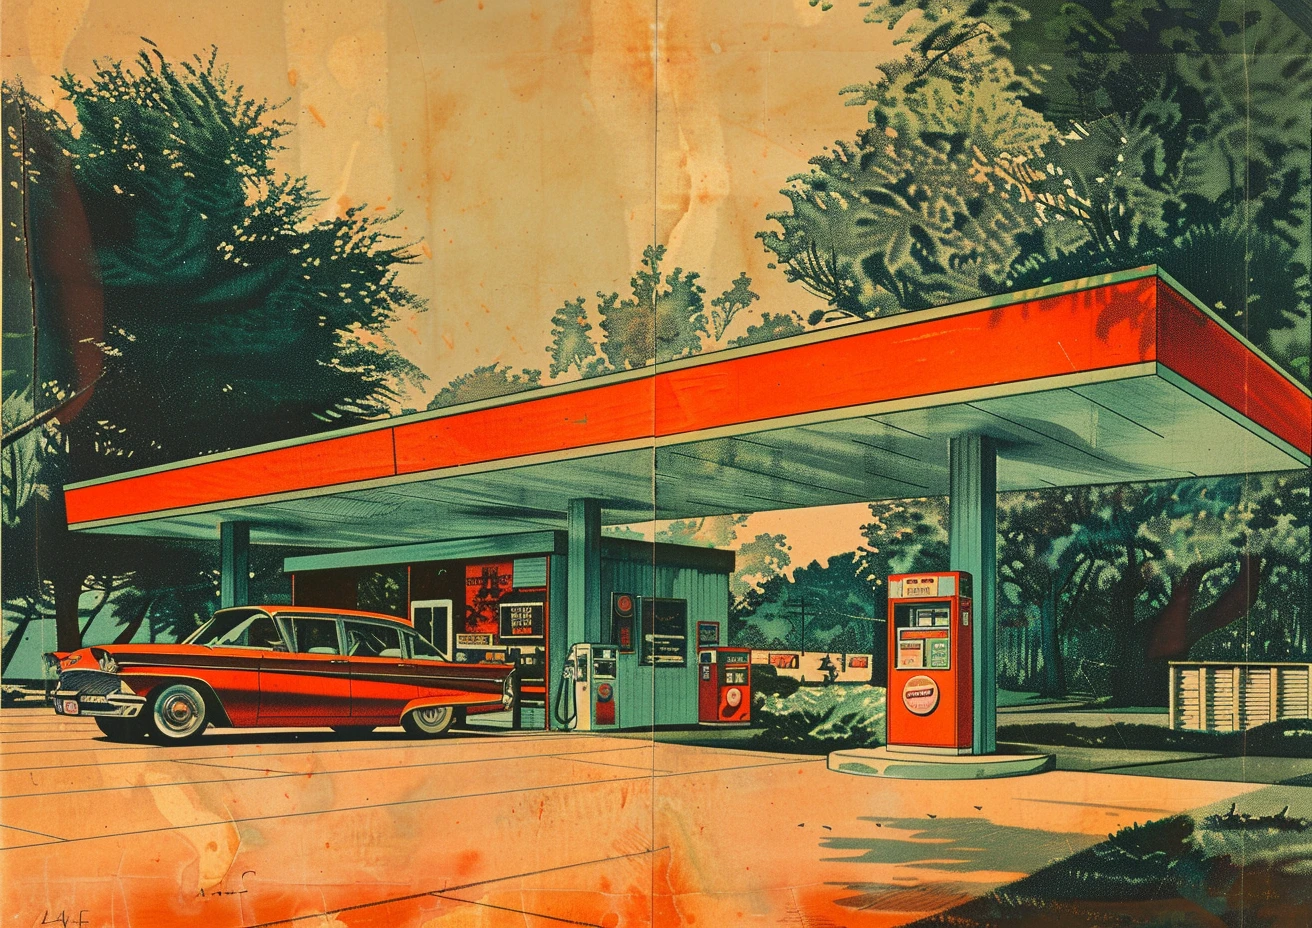 A retro gas station